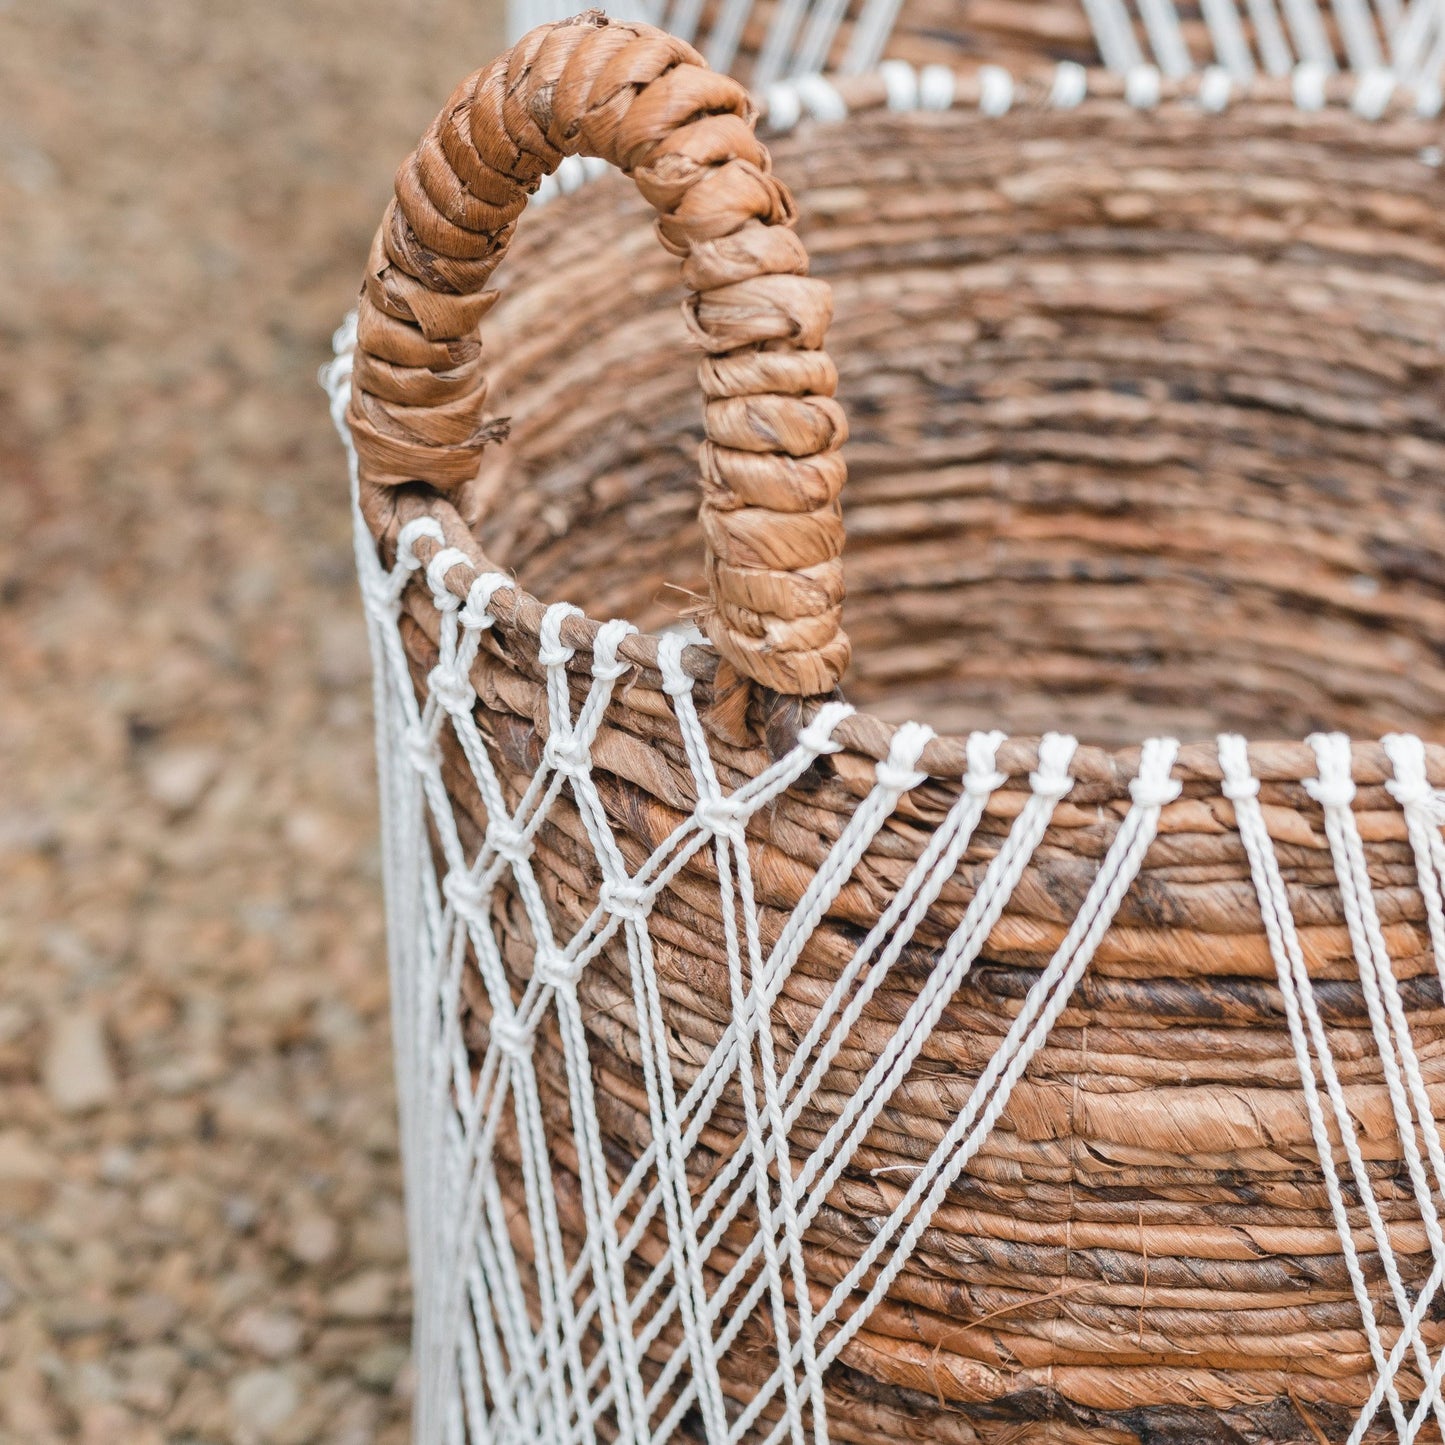 Laundry basket | Plant basket | JUWANA storage basket made of banana fiber